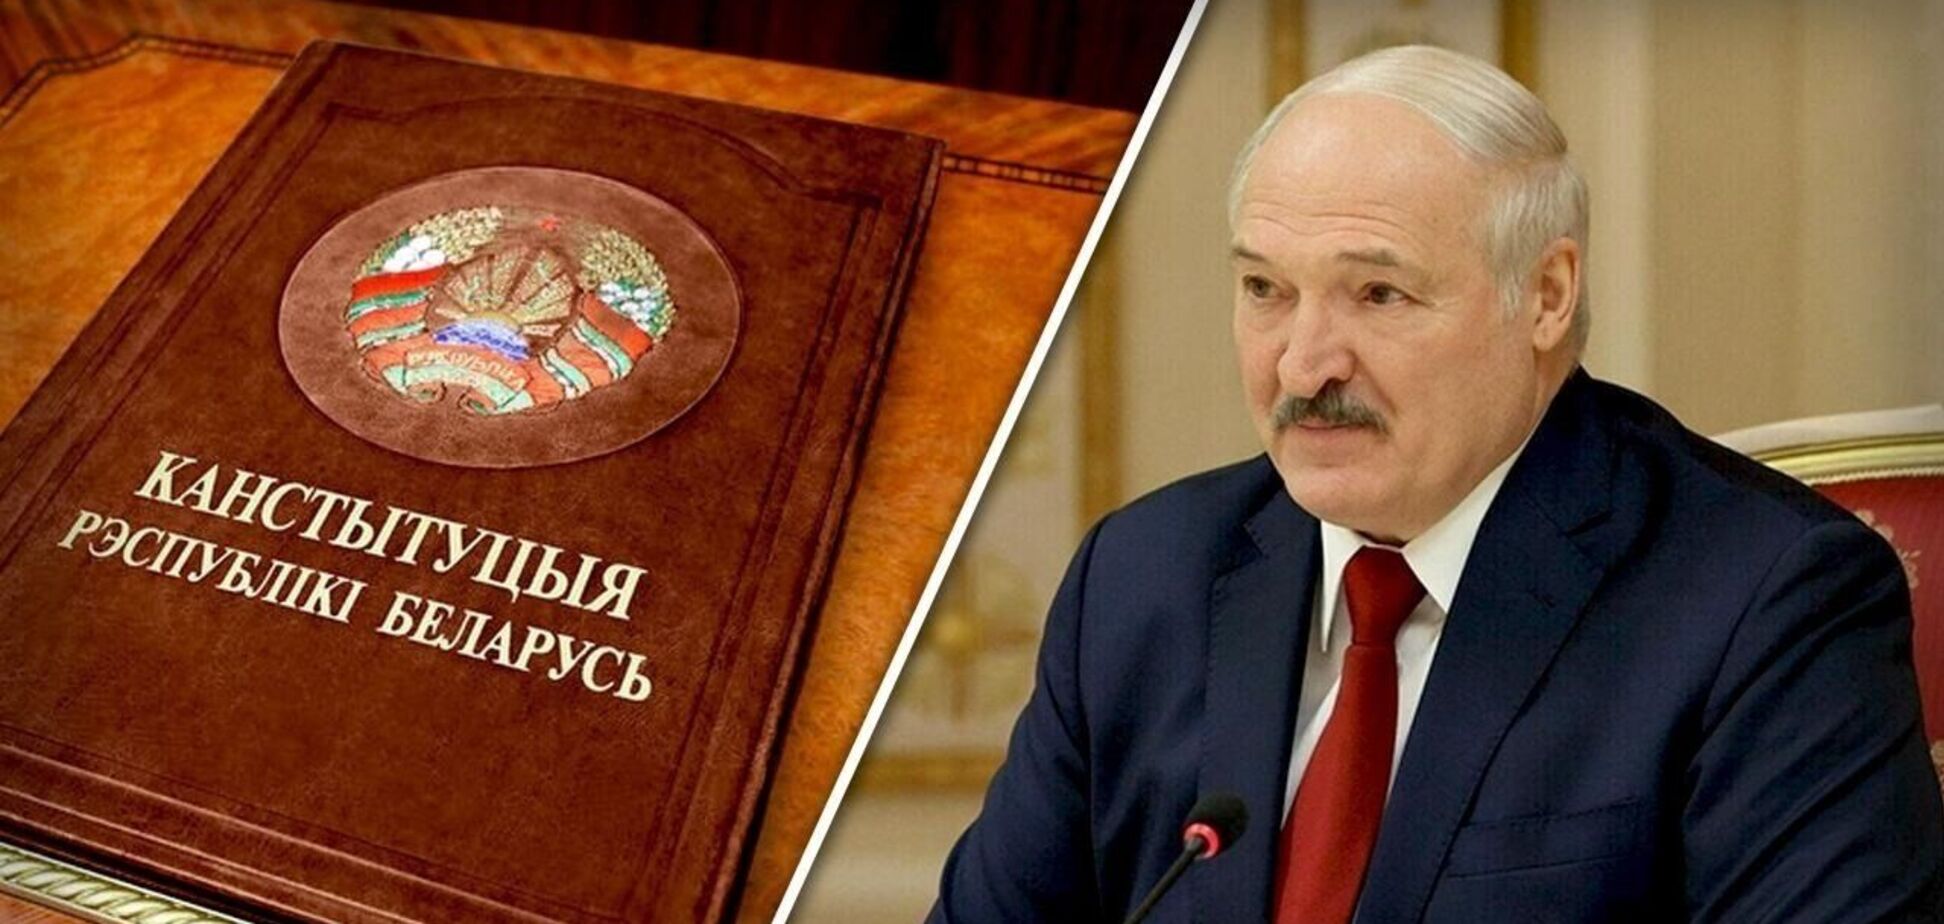 Лукашенко закрепляет свою власть: пожизненная неприкосновенность и ограничение оппозиции в Беларуси